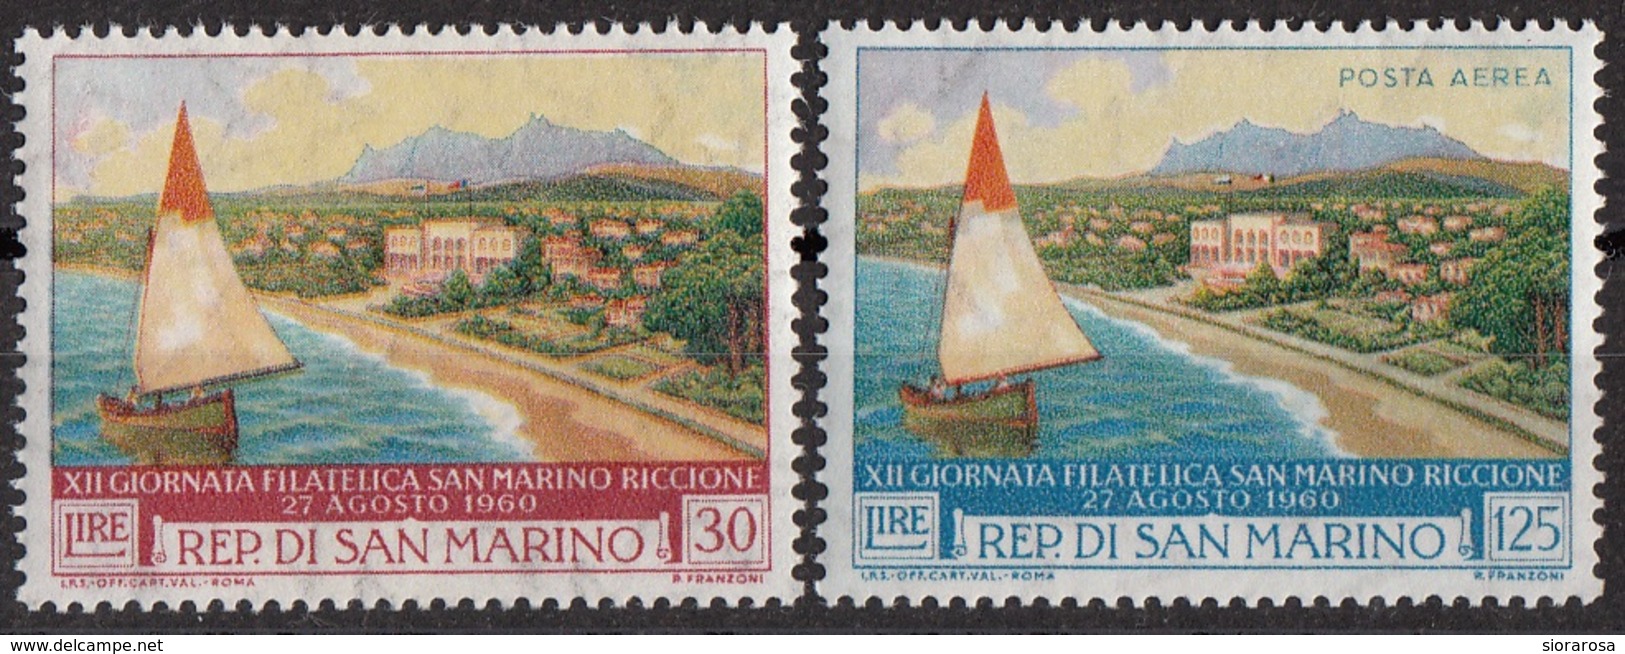 San Marino 1960 Bf.543-A136 Mostra Filatelica - Barca E Riccione Full Set MNH - Barcos